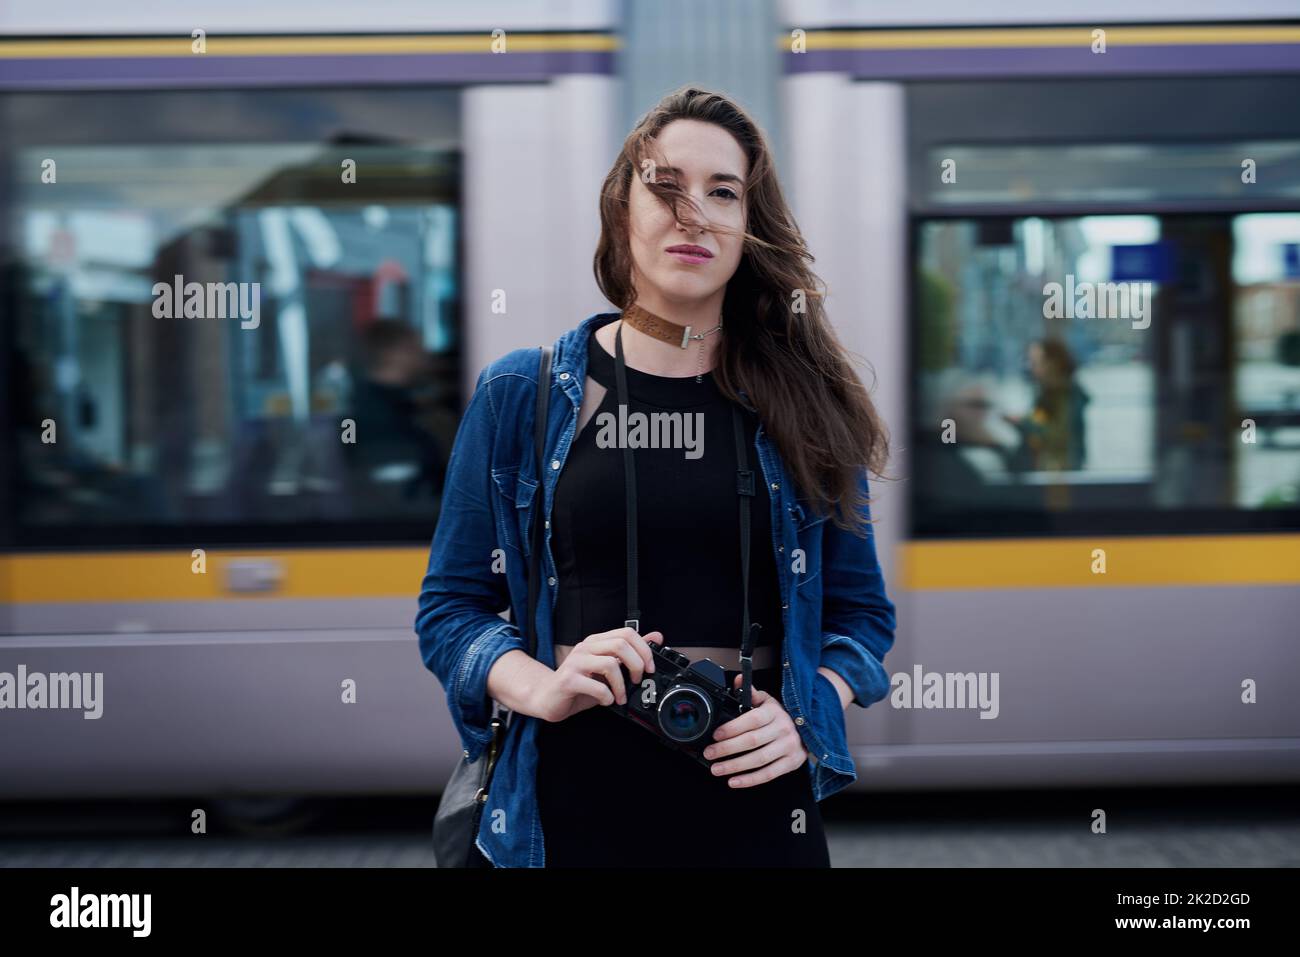 Siempre estoy atento a la oportunidad de hacer fotos. Retrato de una atractiva joven fotógrafa parada en el metro con un tren pasando por el fondo. Foto de stock